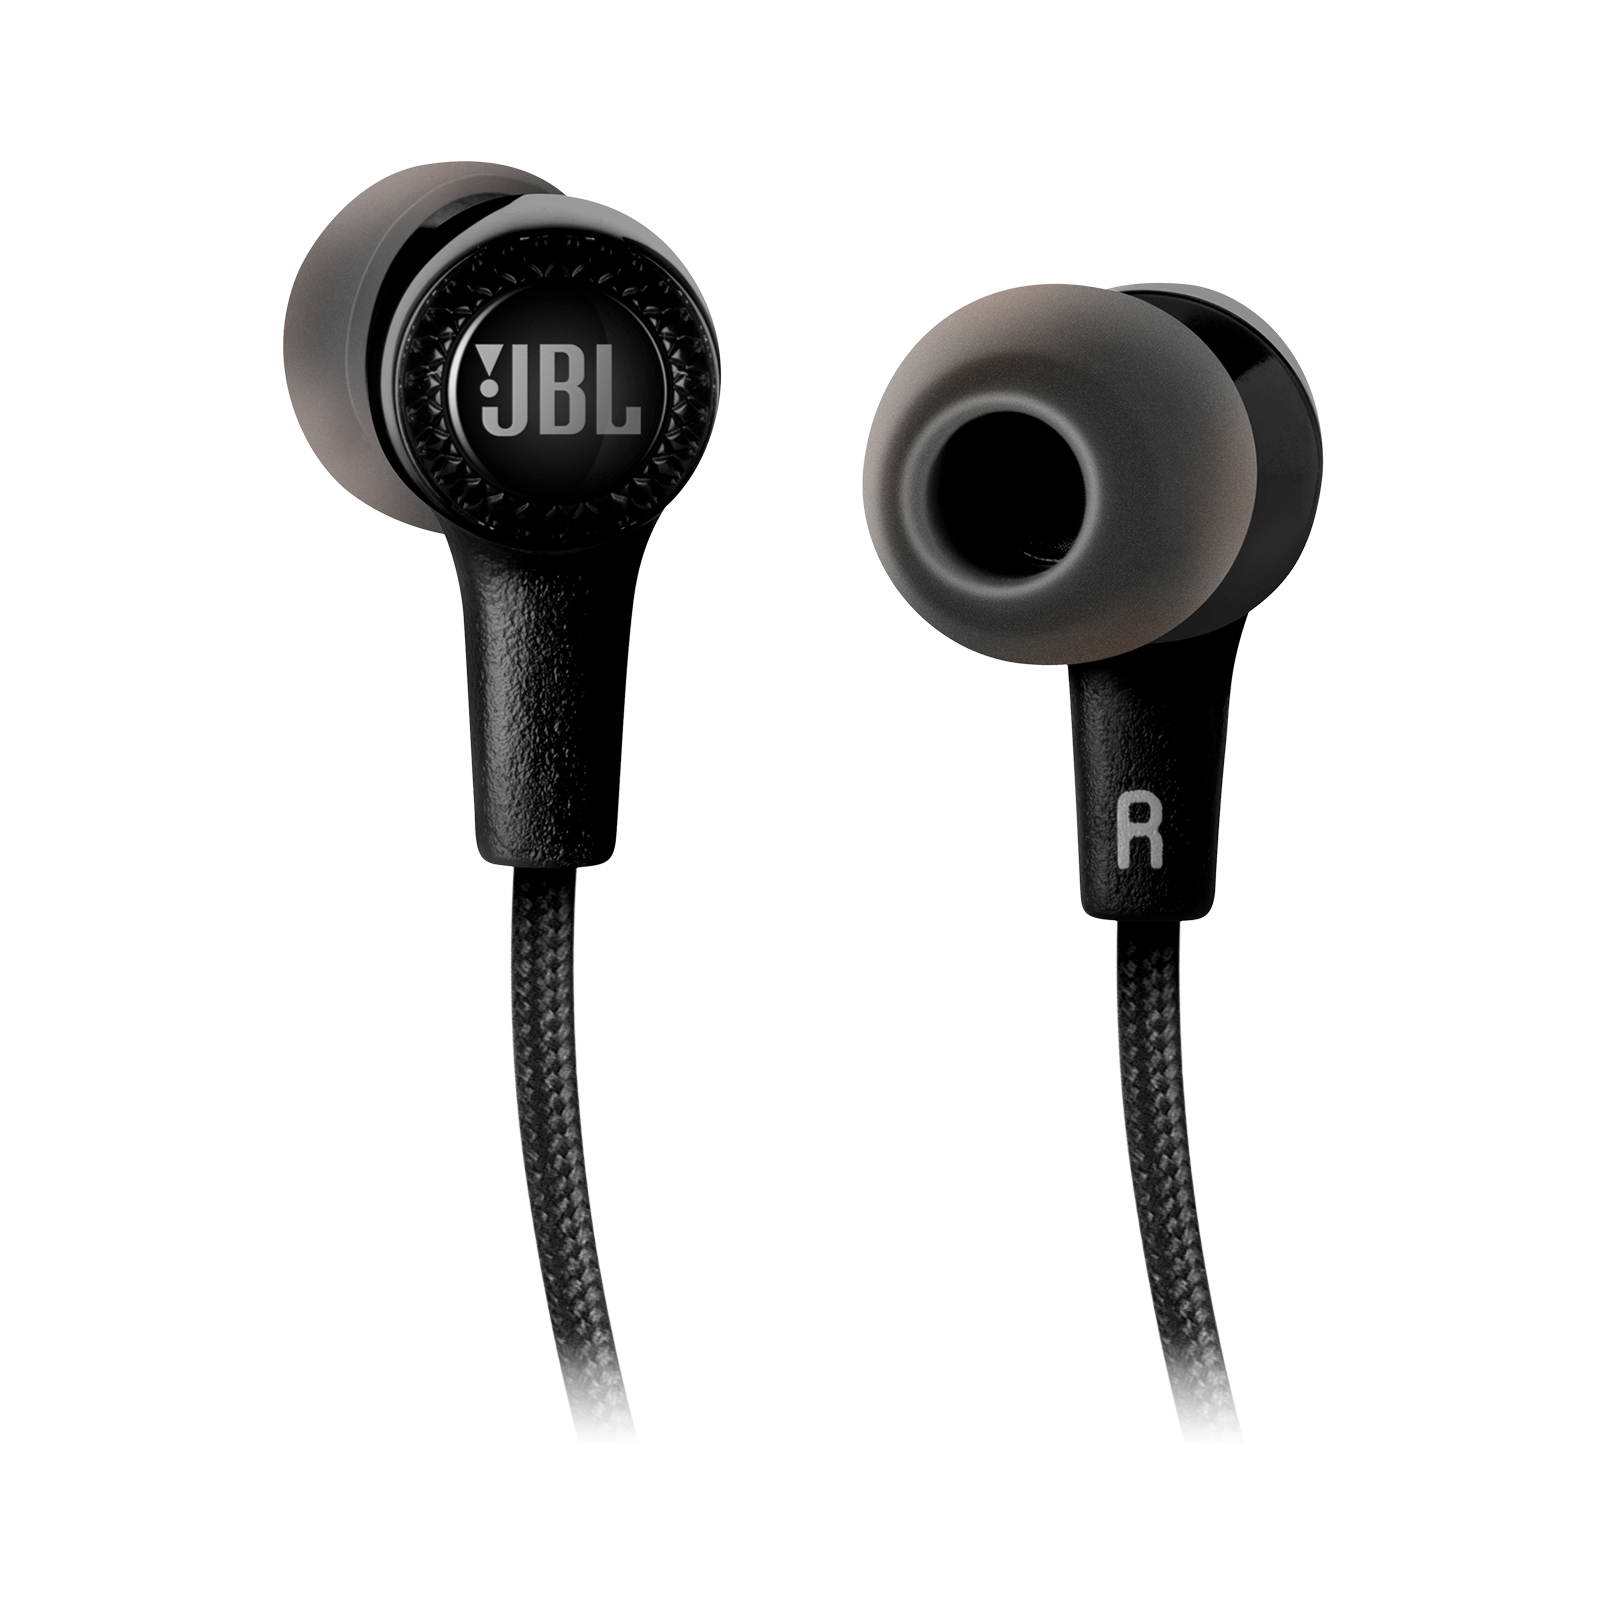 E25BT - Black - Wireless in-ear headphones - Detailshot 1